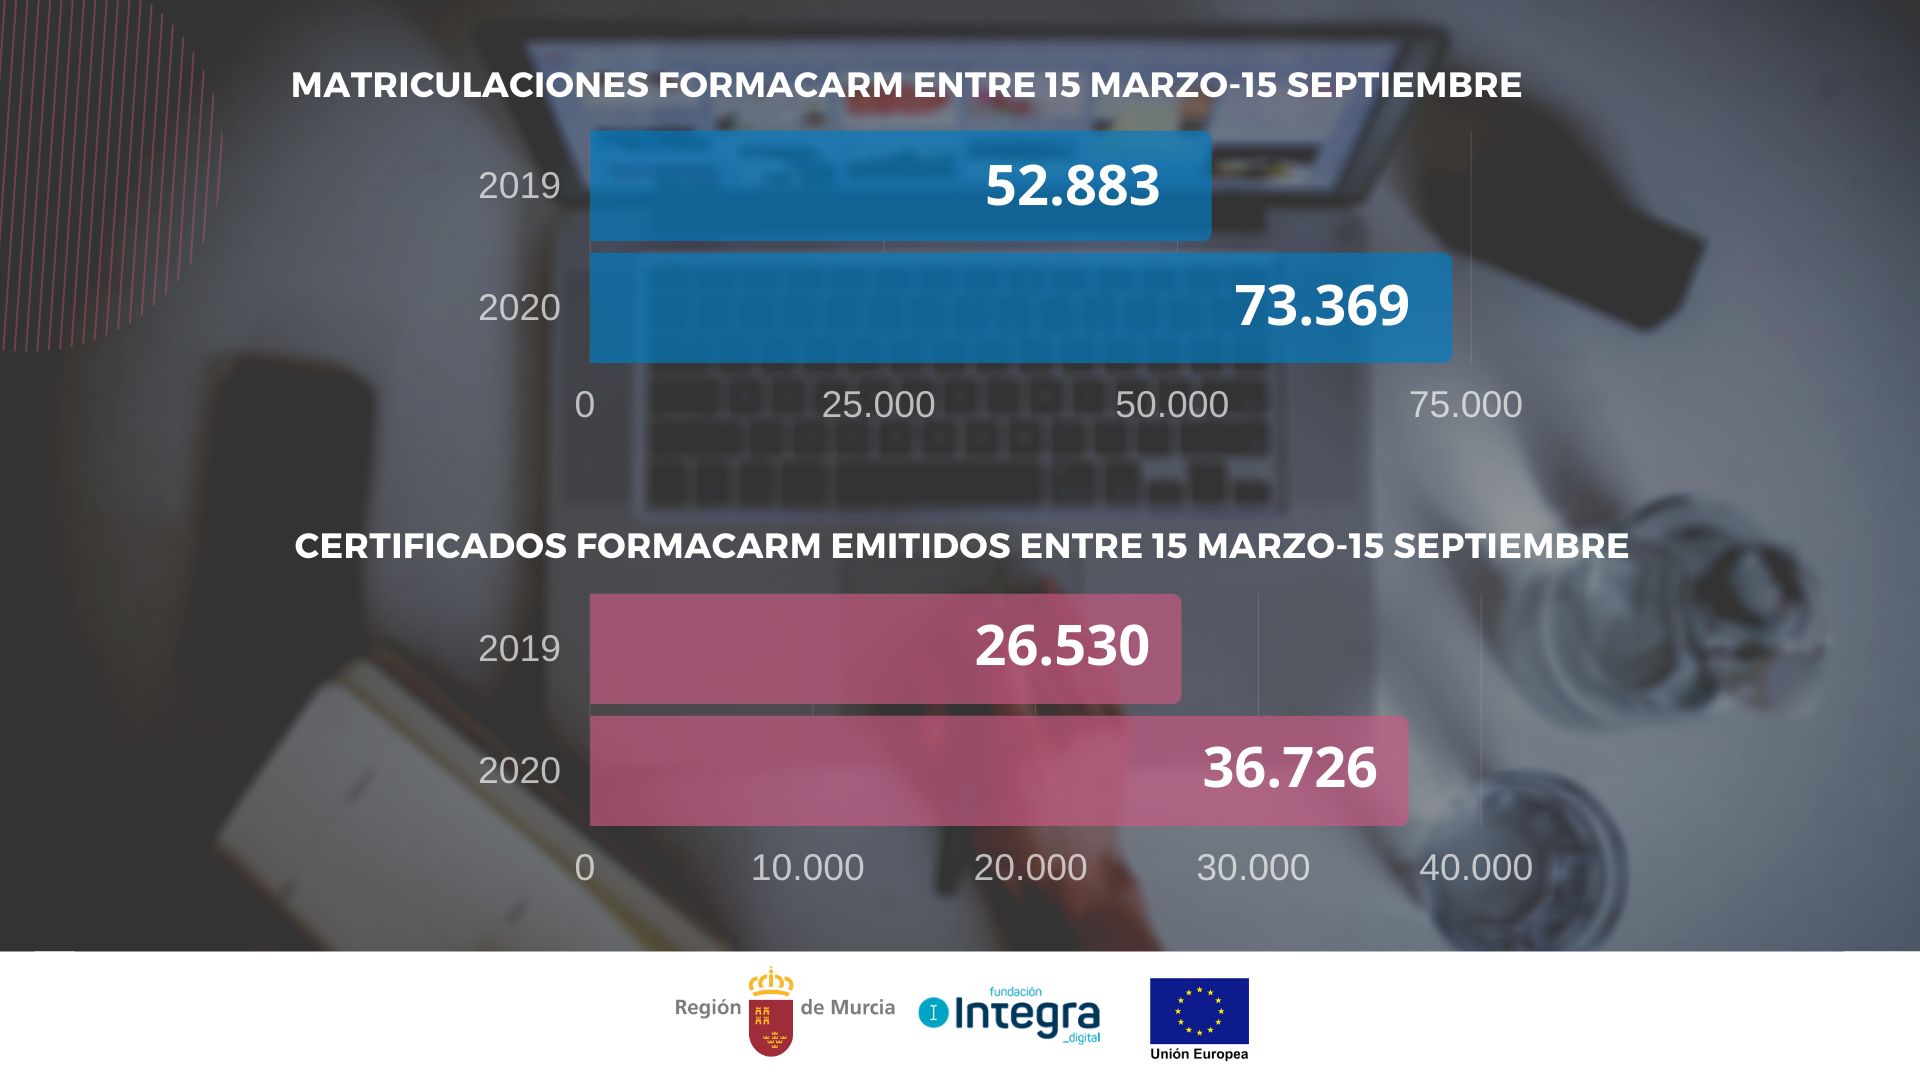 Gráfico que compara los datos de matriculaciones y de certificados emitidos por Formacarm entre el 15 de marzo y el 15 de septiembre de 2019 y 2020